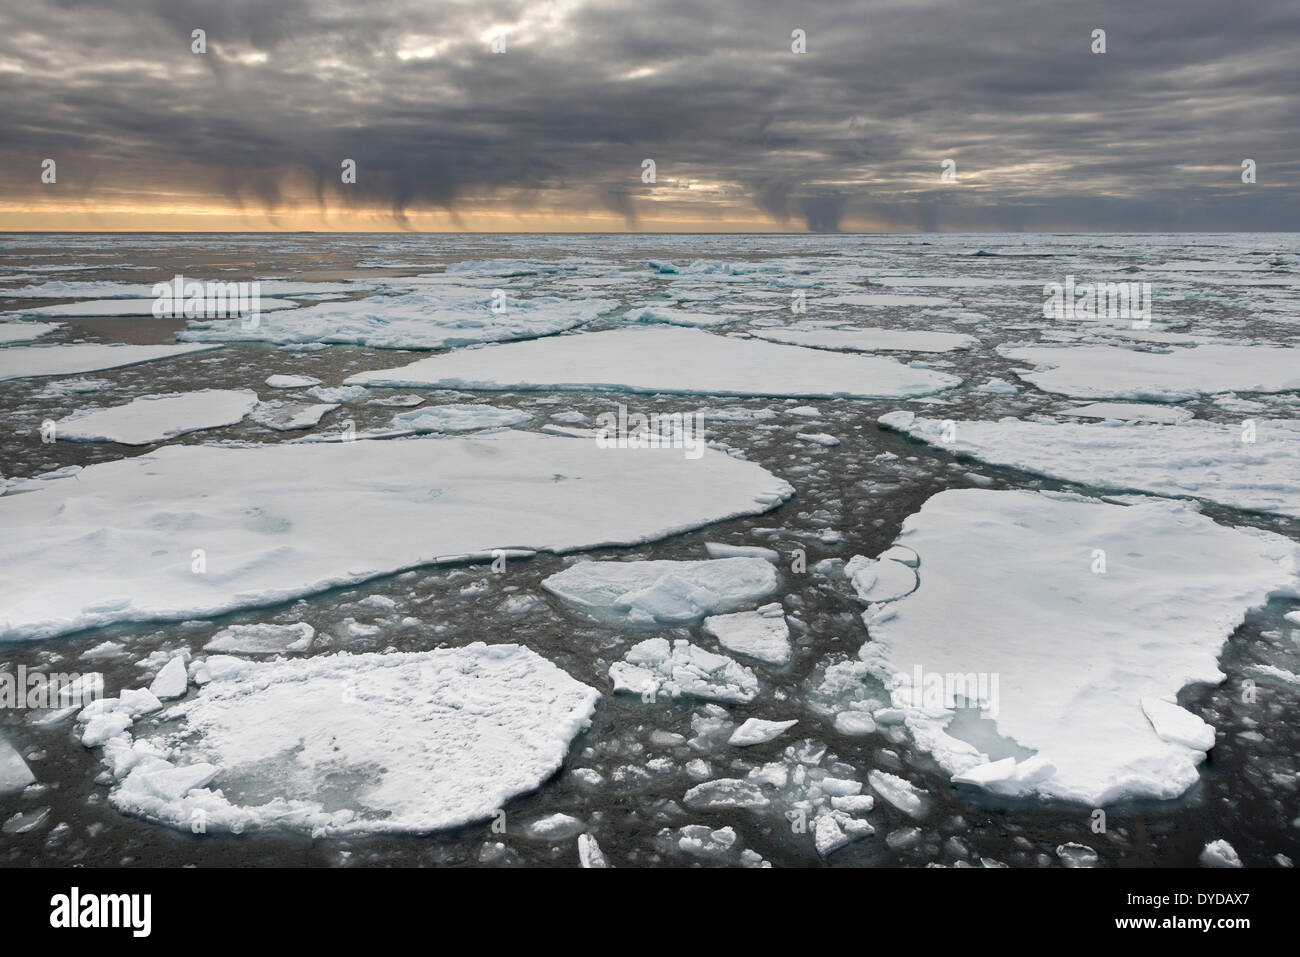 Doccia di neve da nuvole scure, il bordo del pacco-ghiaccio, Oceano Artico, isola Spitsbergen, arcipelago delle Svalbard Isole Svalbard e Jan Mayen Foto Stock